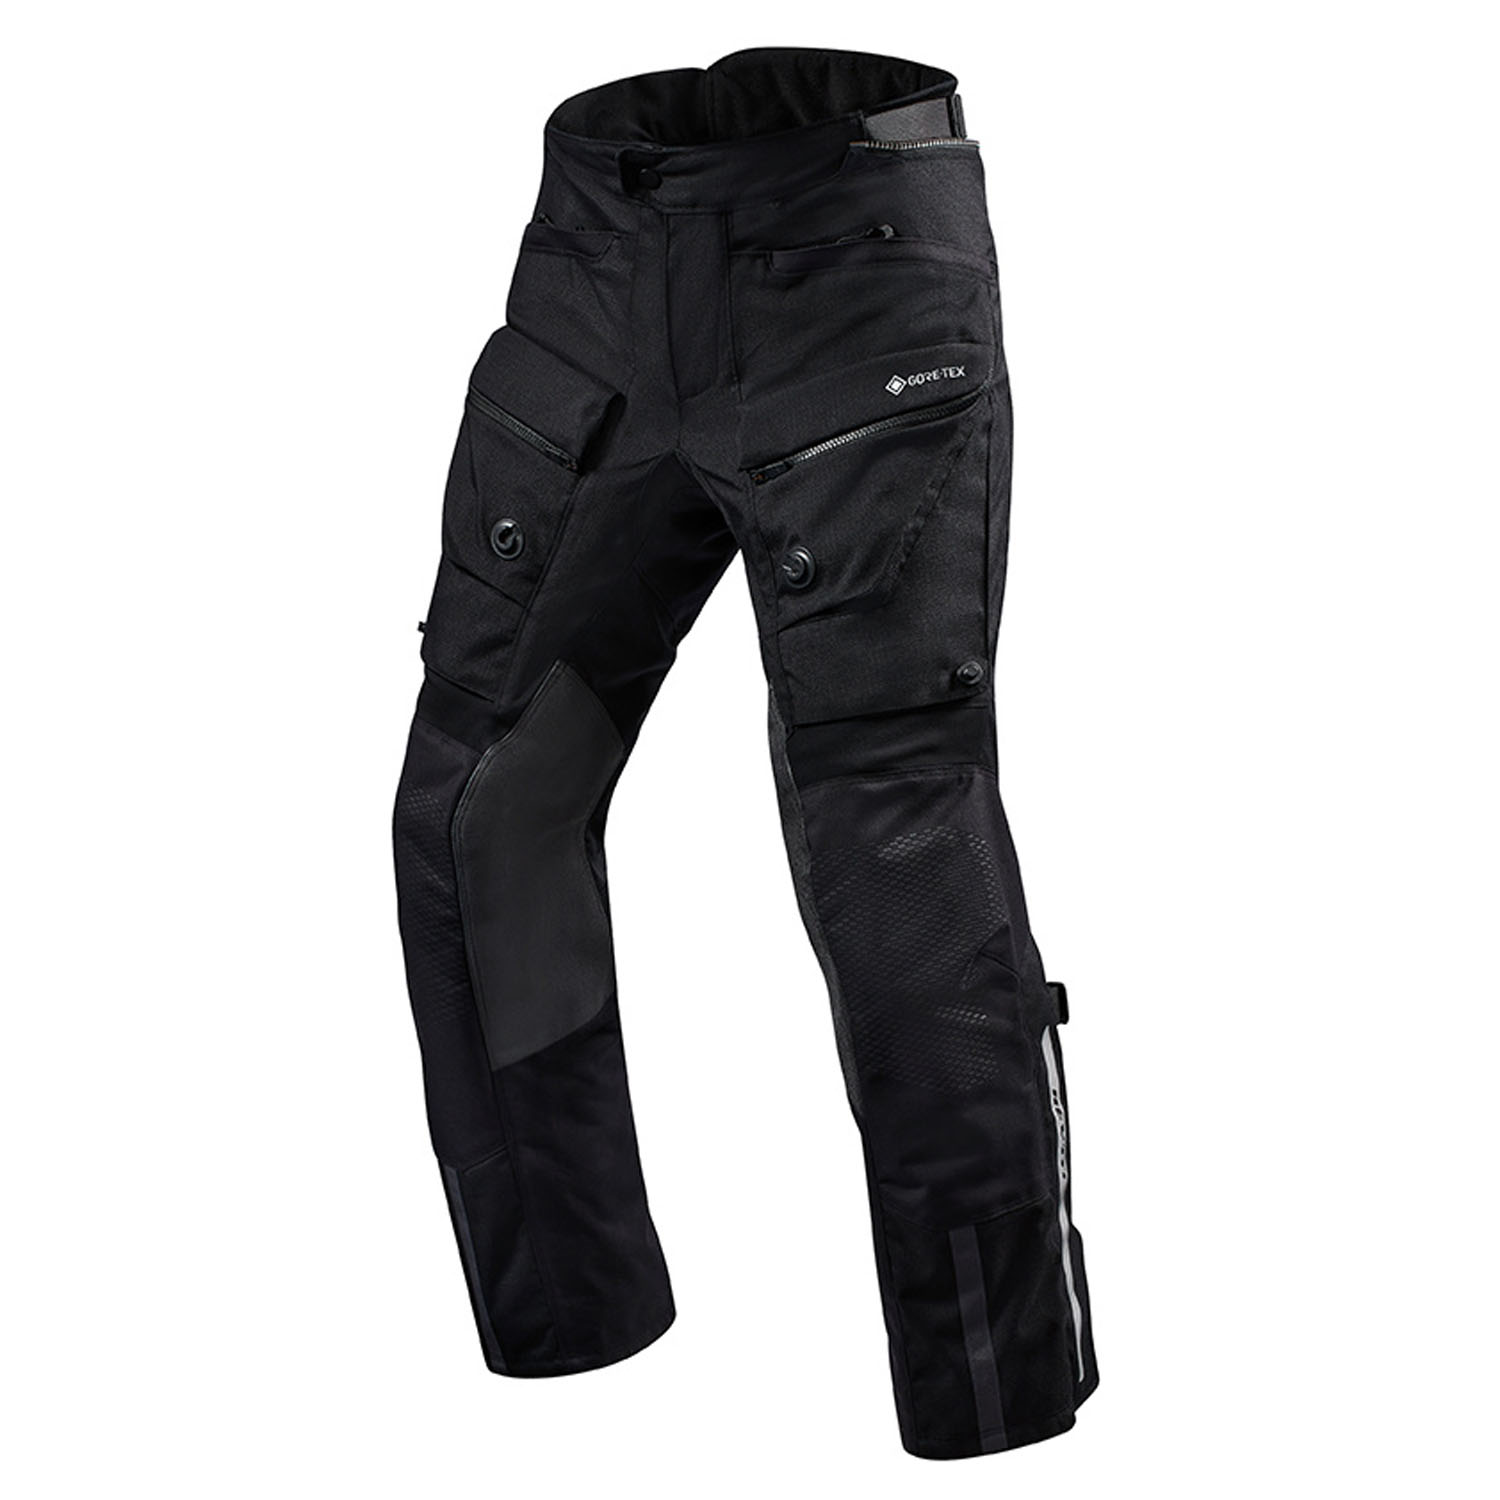 Image of REV'IT! Trousers Defender 3 GTX Black Long Motorcycle Pants Größe 2XL